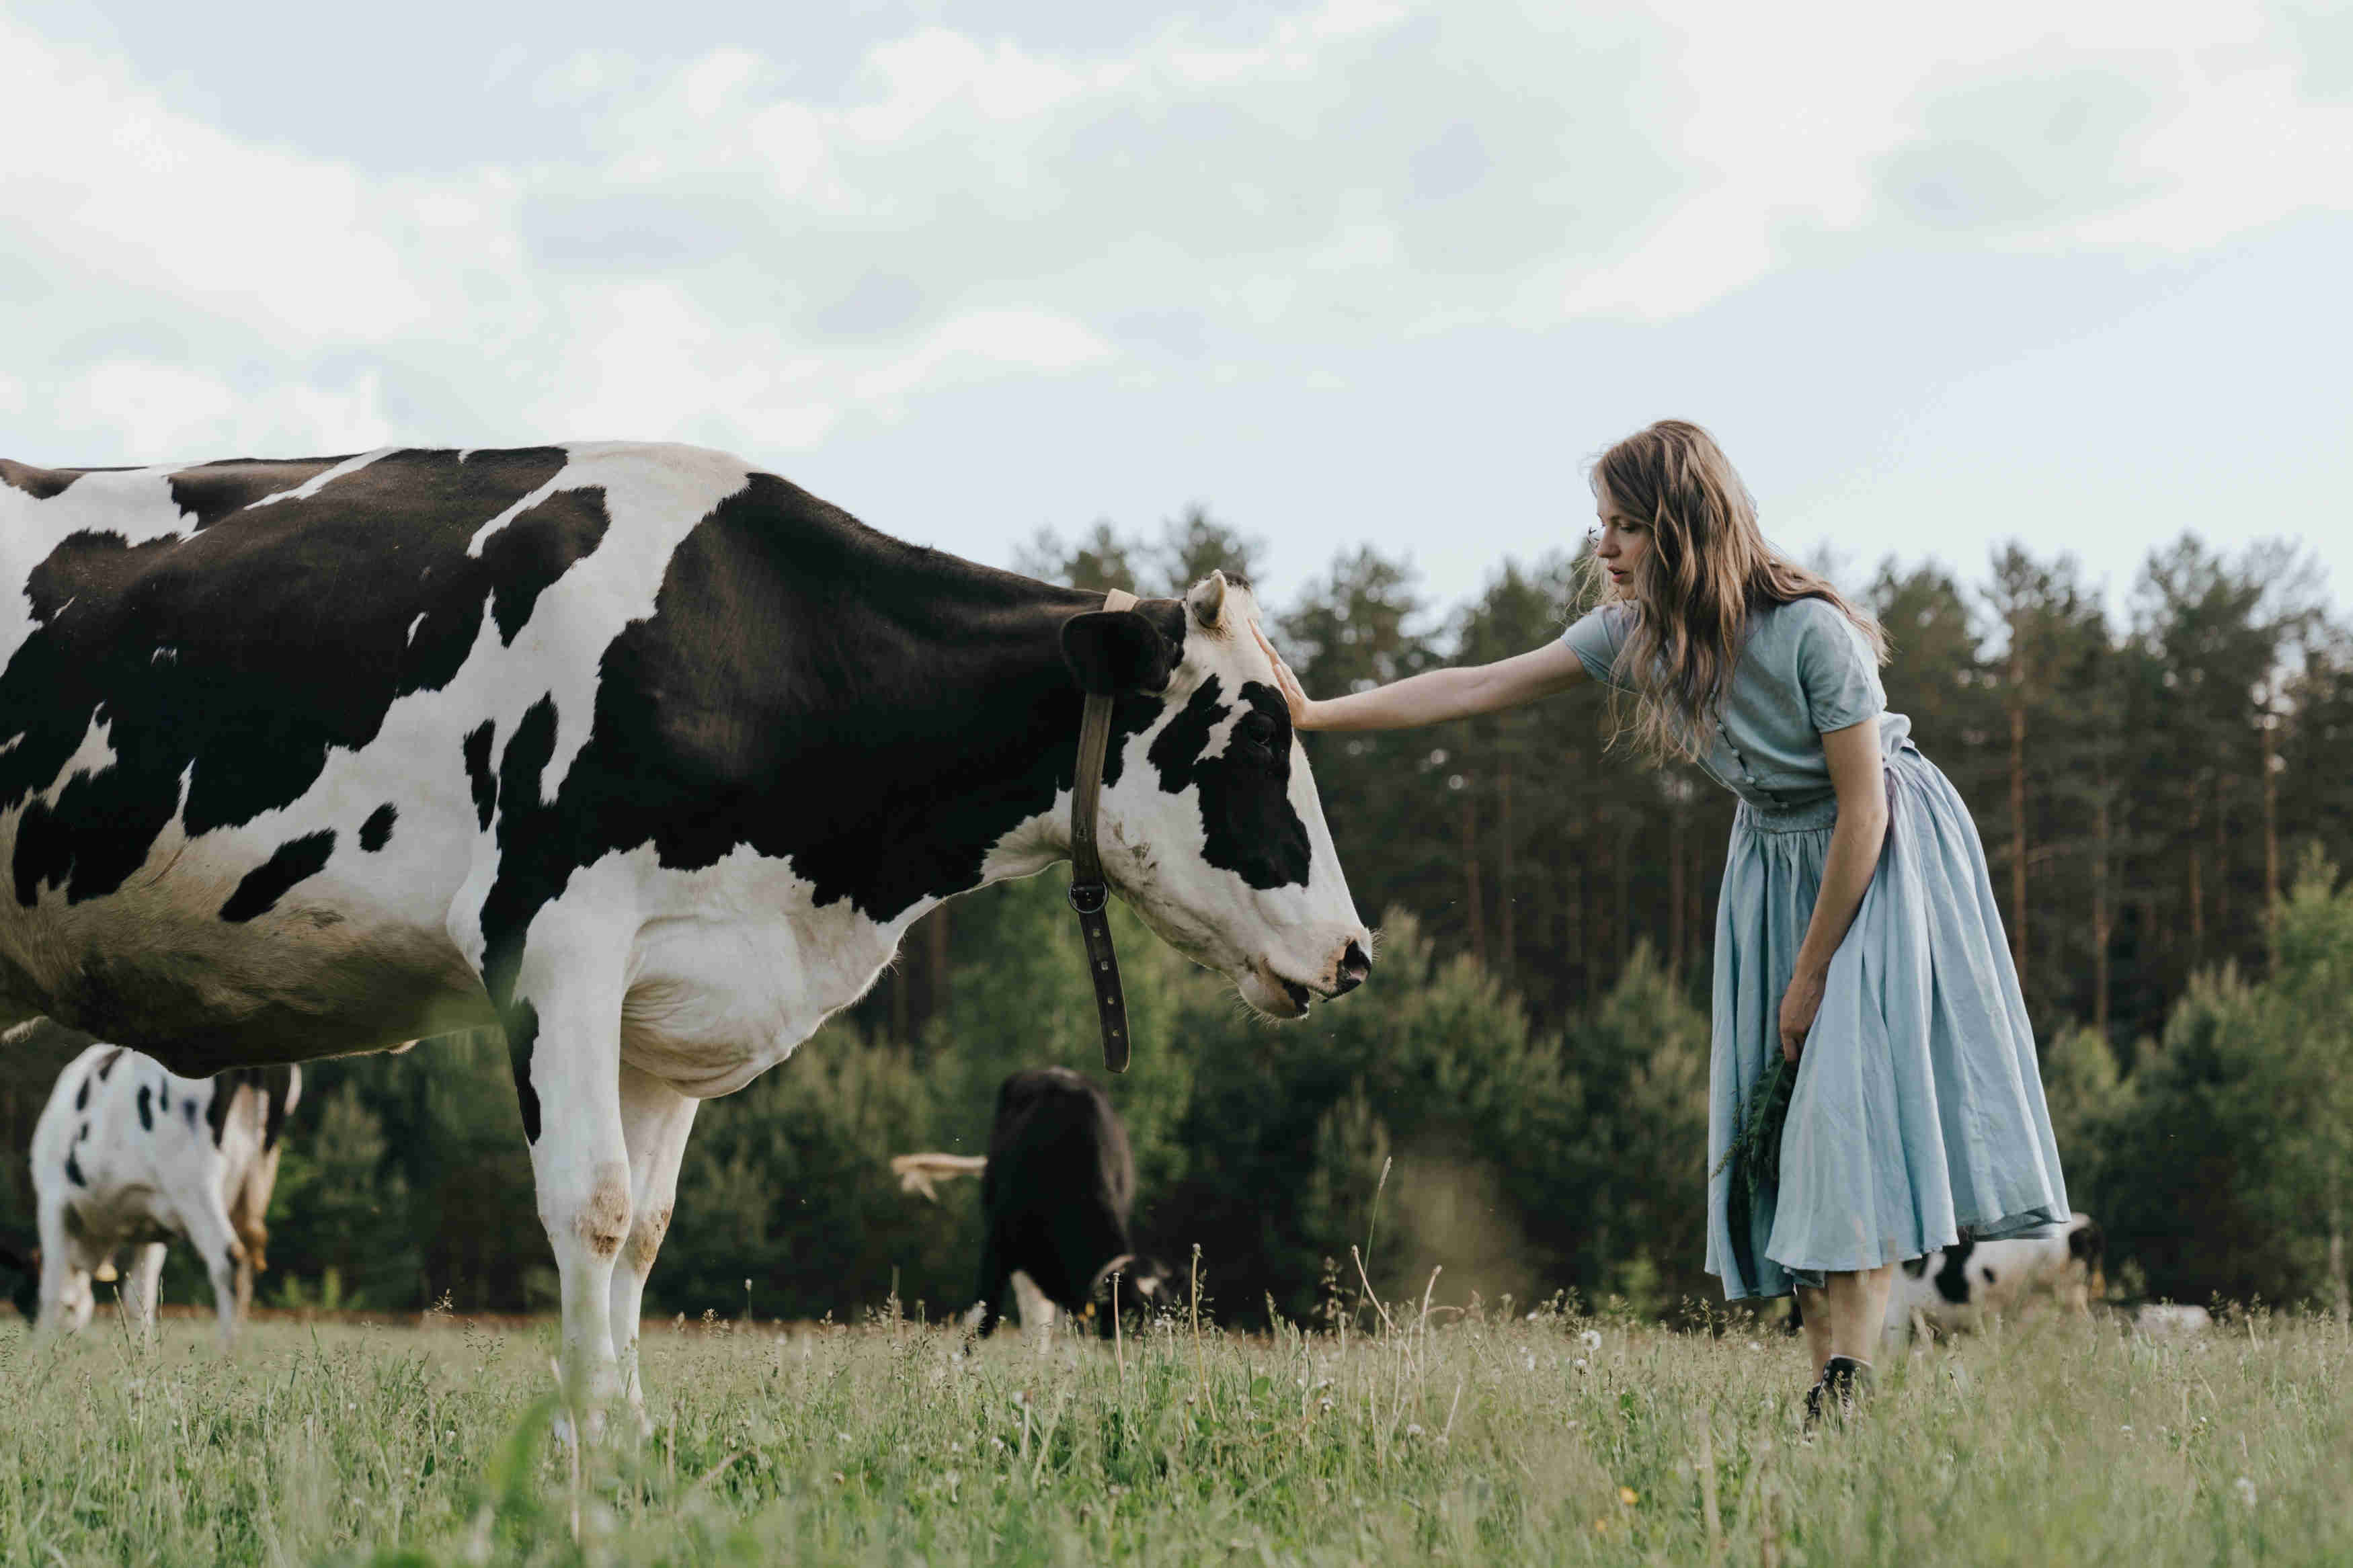 Weiblich gelesene Person streichelt Kuh auf grüner Wiese. Sie hält einen Blumenstrauß in der Hand. Im Hintergrund weiden weitere Kühe.